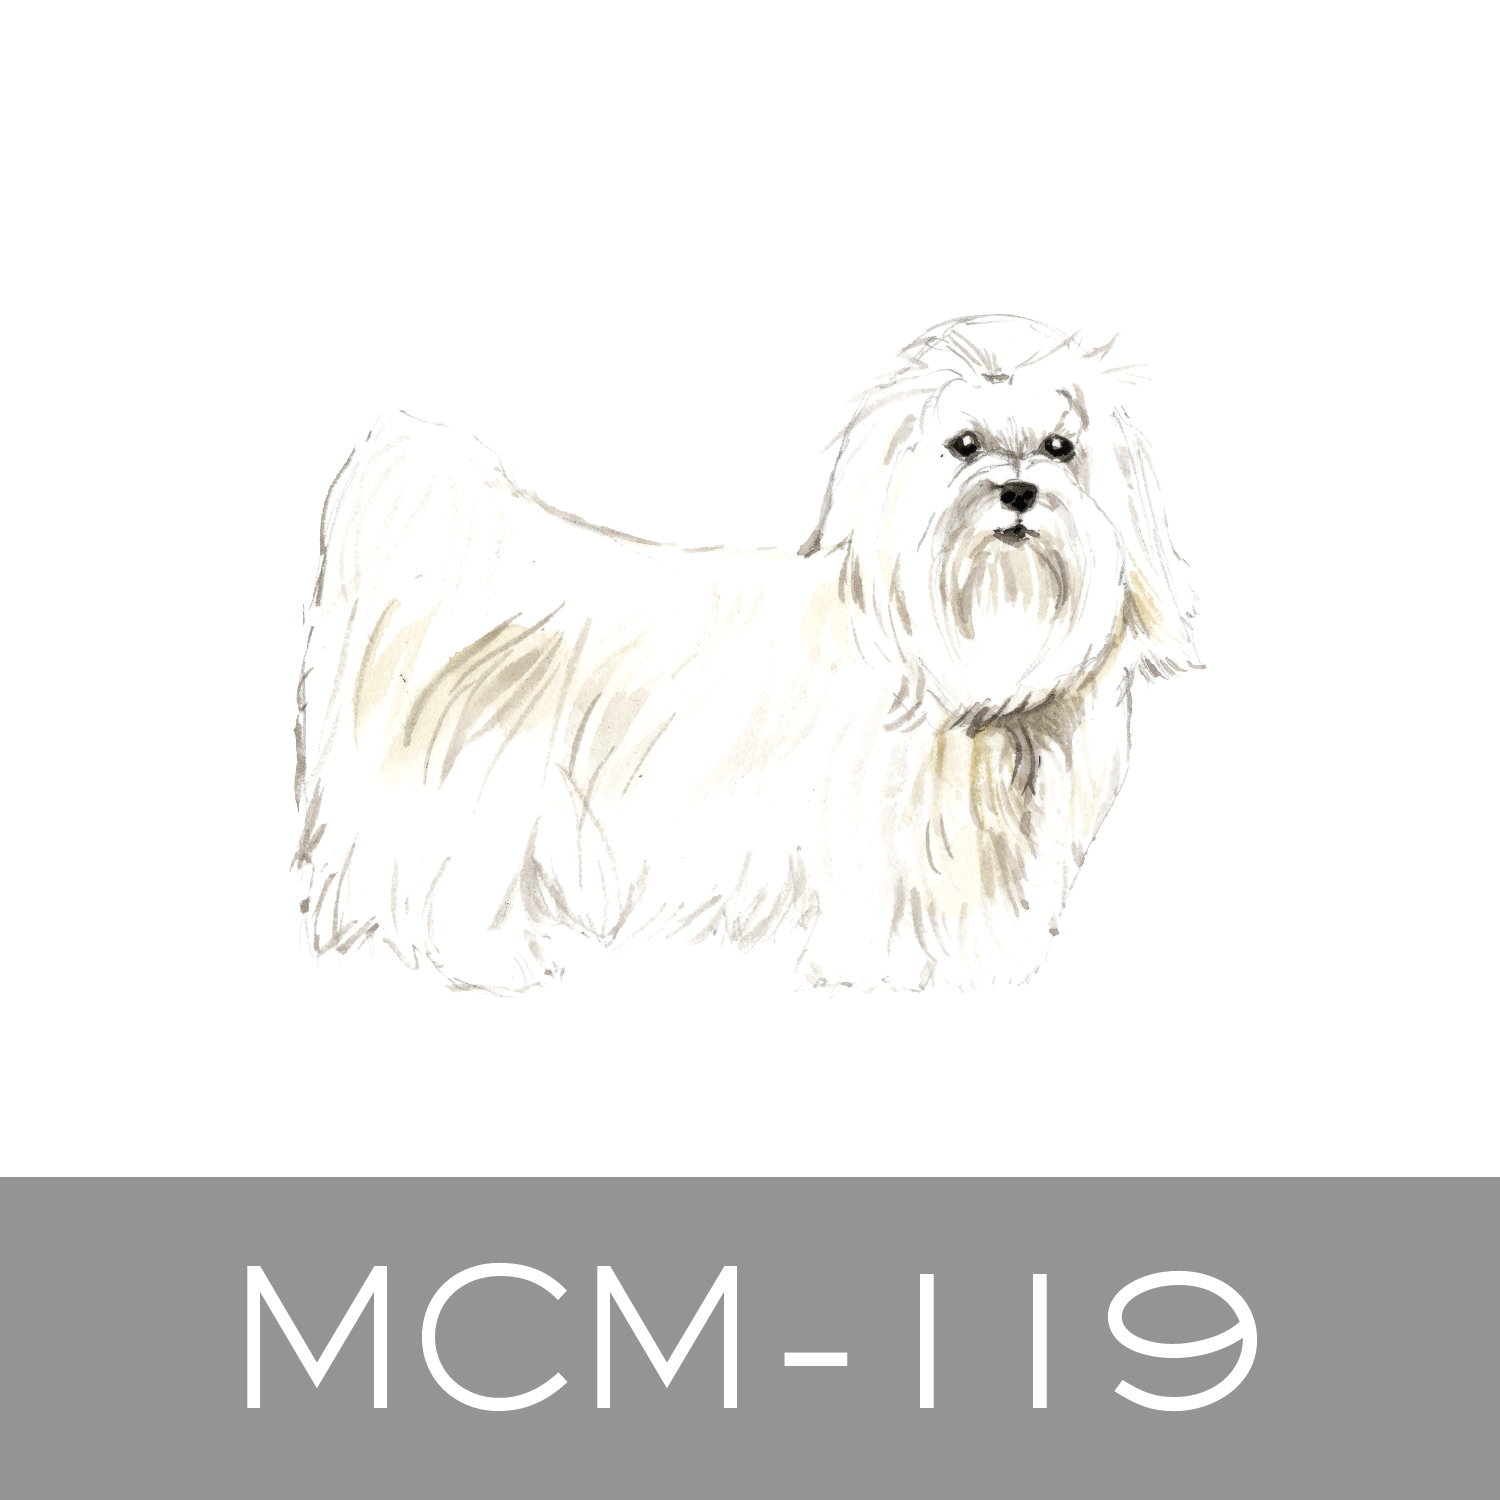 MCM-119.png